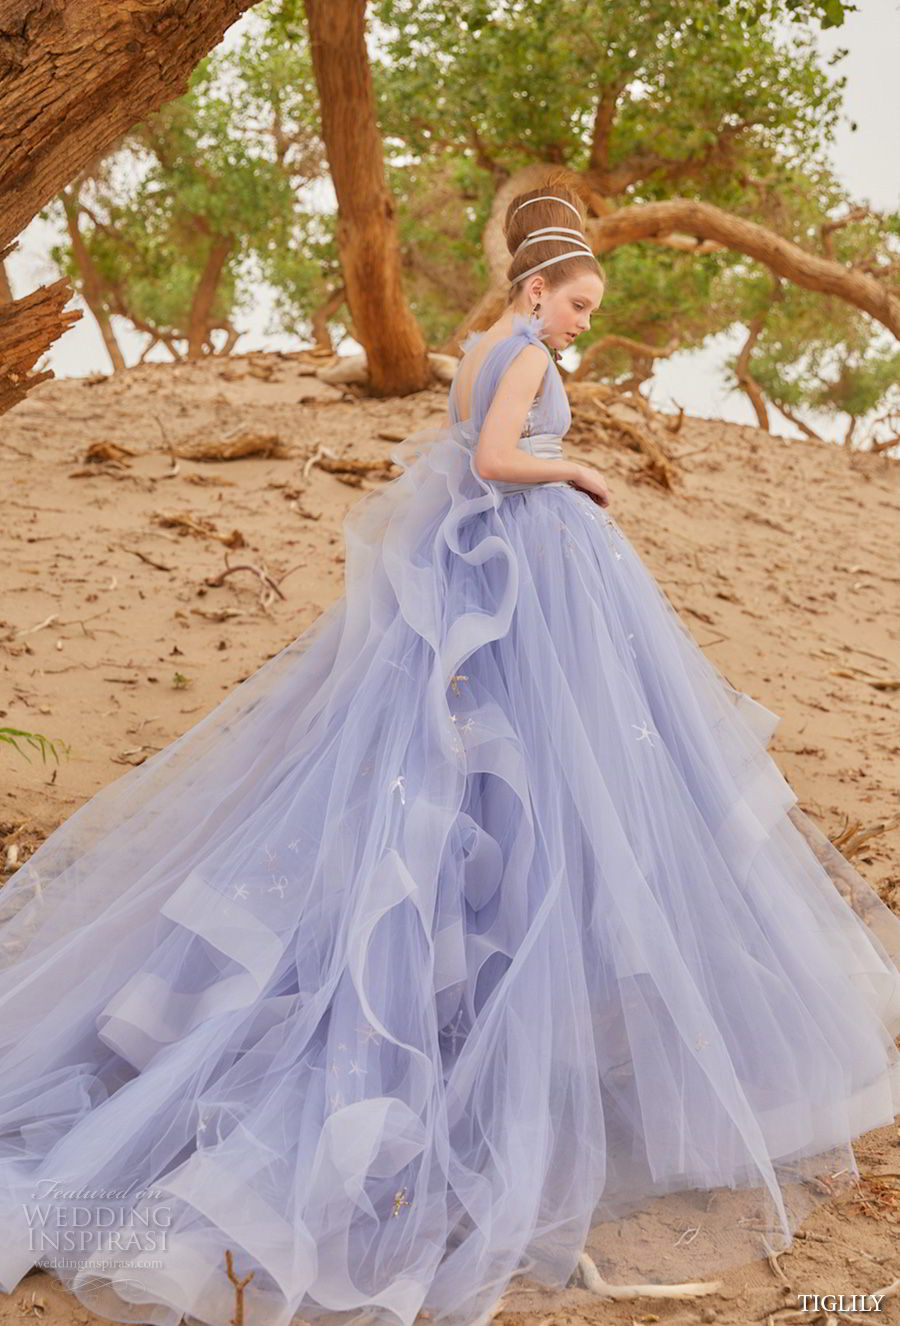 wedding dresses lavender color